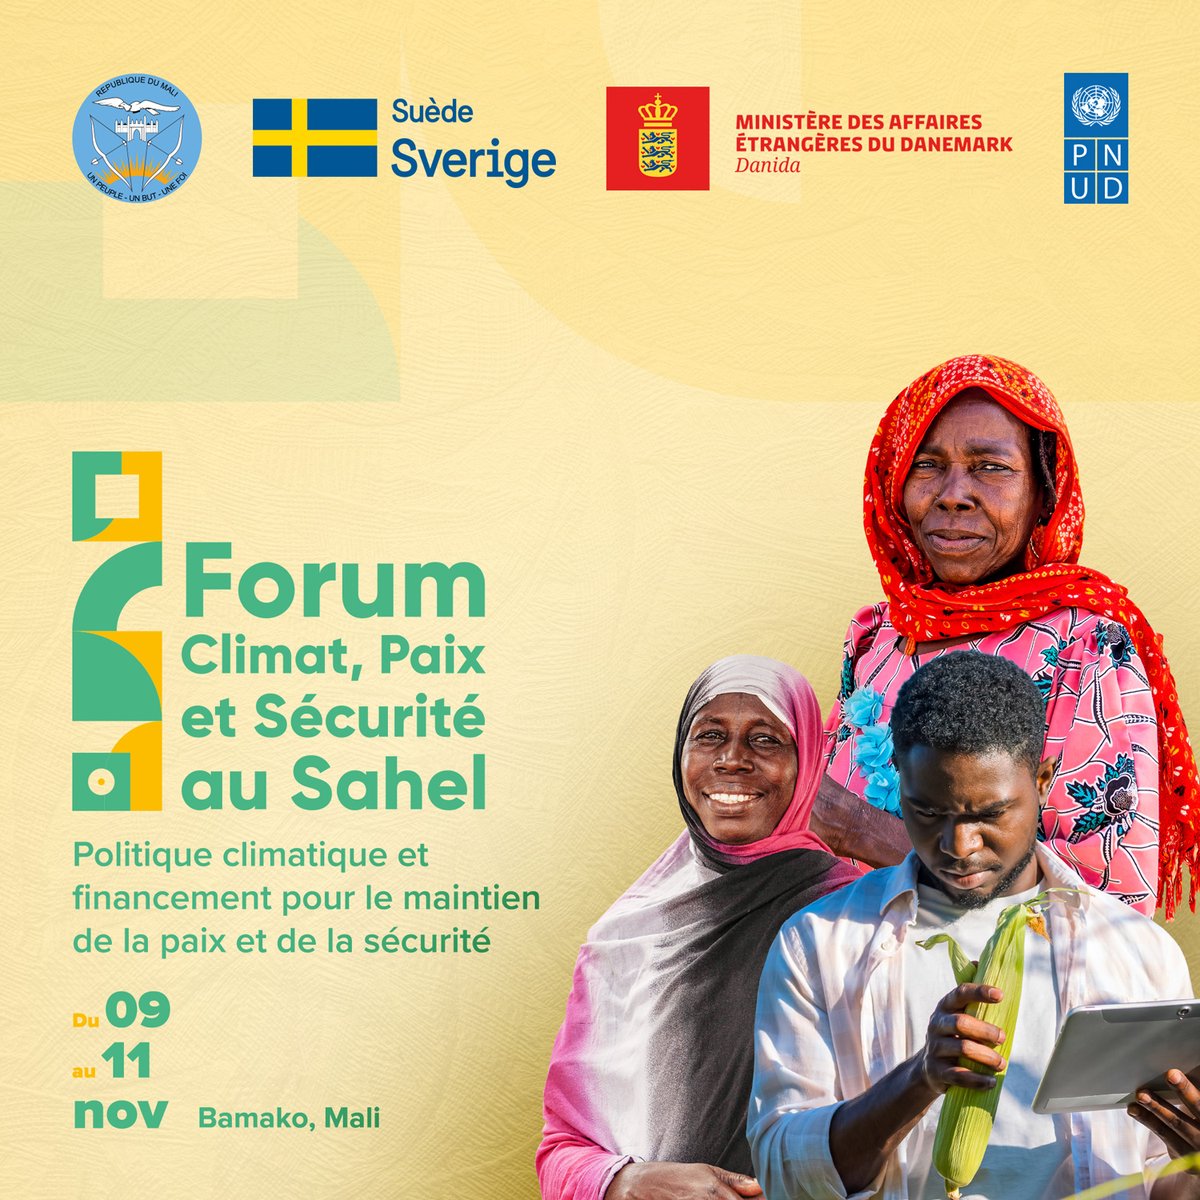 Plus qu'un jour ! 📣
Demain s'ouvrira une discussion essentielle pour le Sahel avec le #ForumSecuriteClimatique.

Ensemble, nous examinons le lien entre la #PolitiqueClimatique & #Financement pour un #Sahel plus sûr.

Restez à l'écoute pour les mises à jour ! 🌍💡
#ThrivingSahel